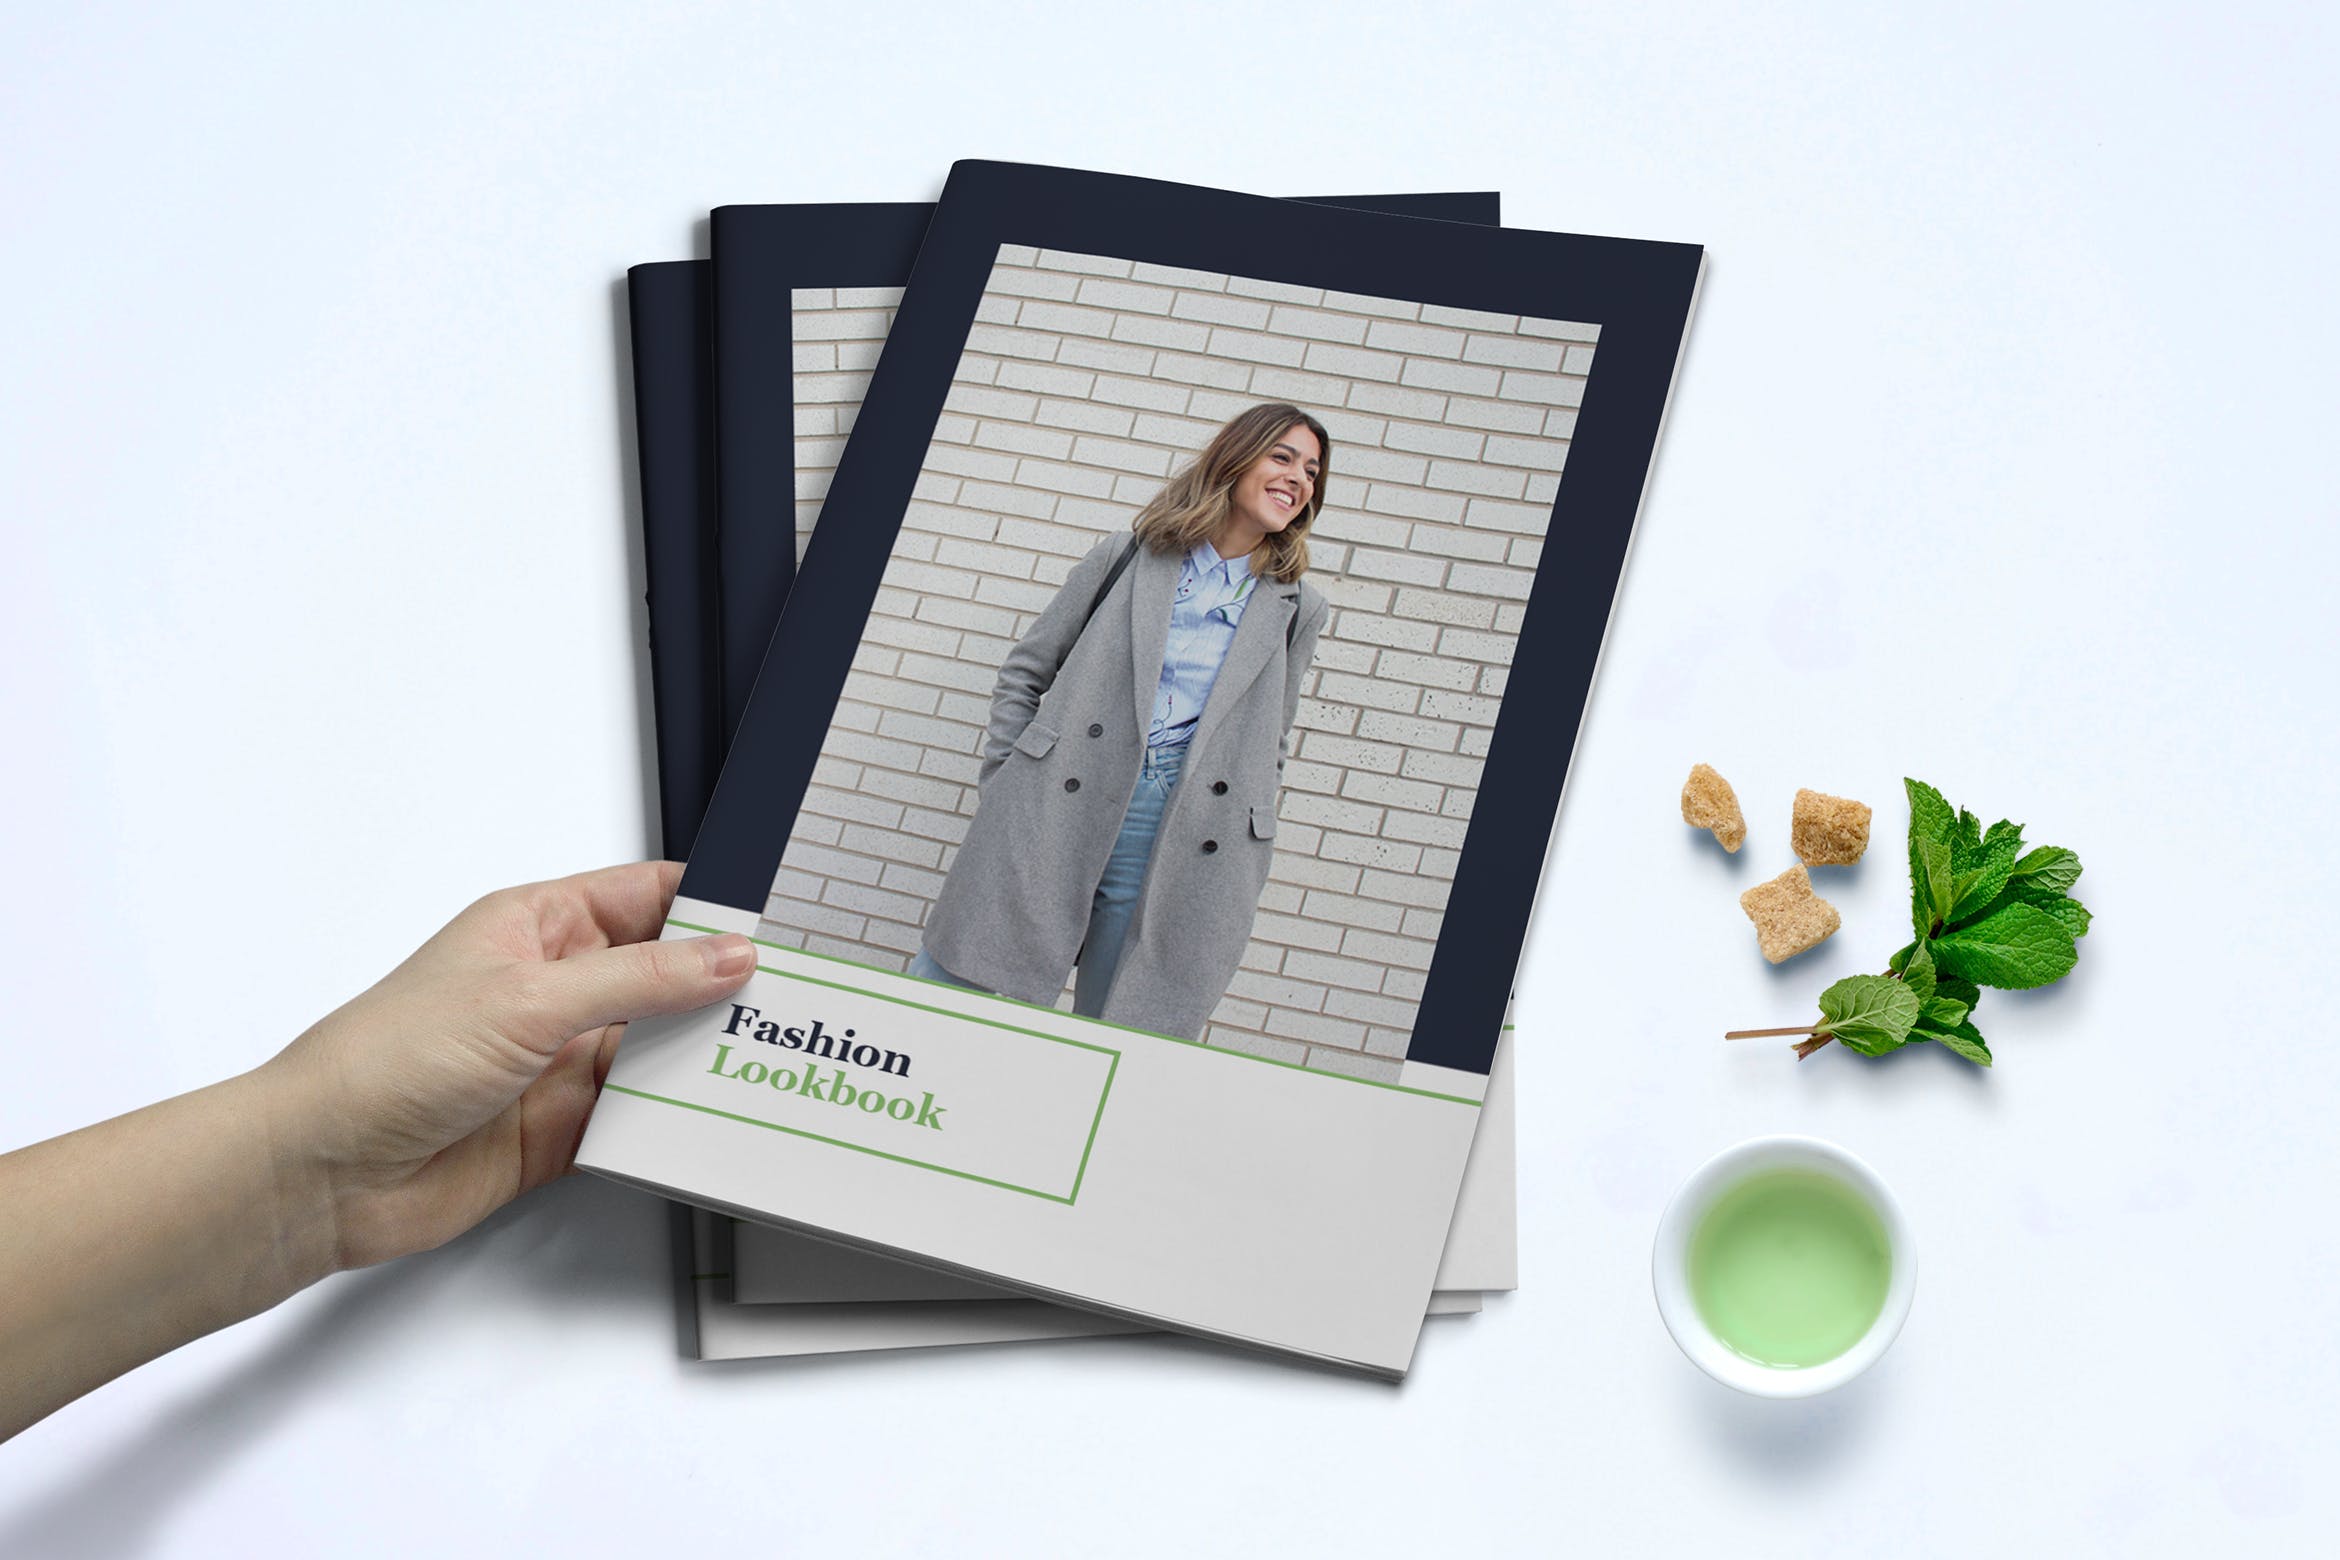 时装订货画册/新品上市产品第一素材精选目录设计模板v1 Fashion Lookbook Template插图